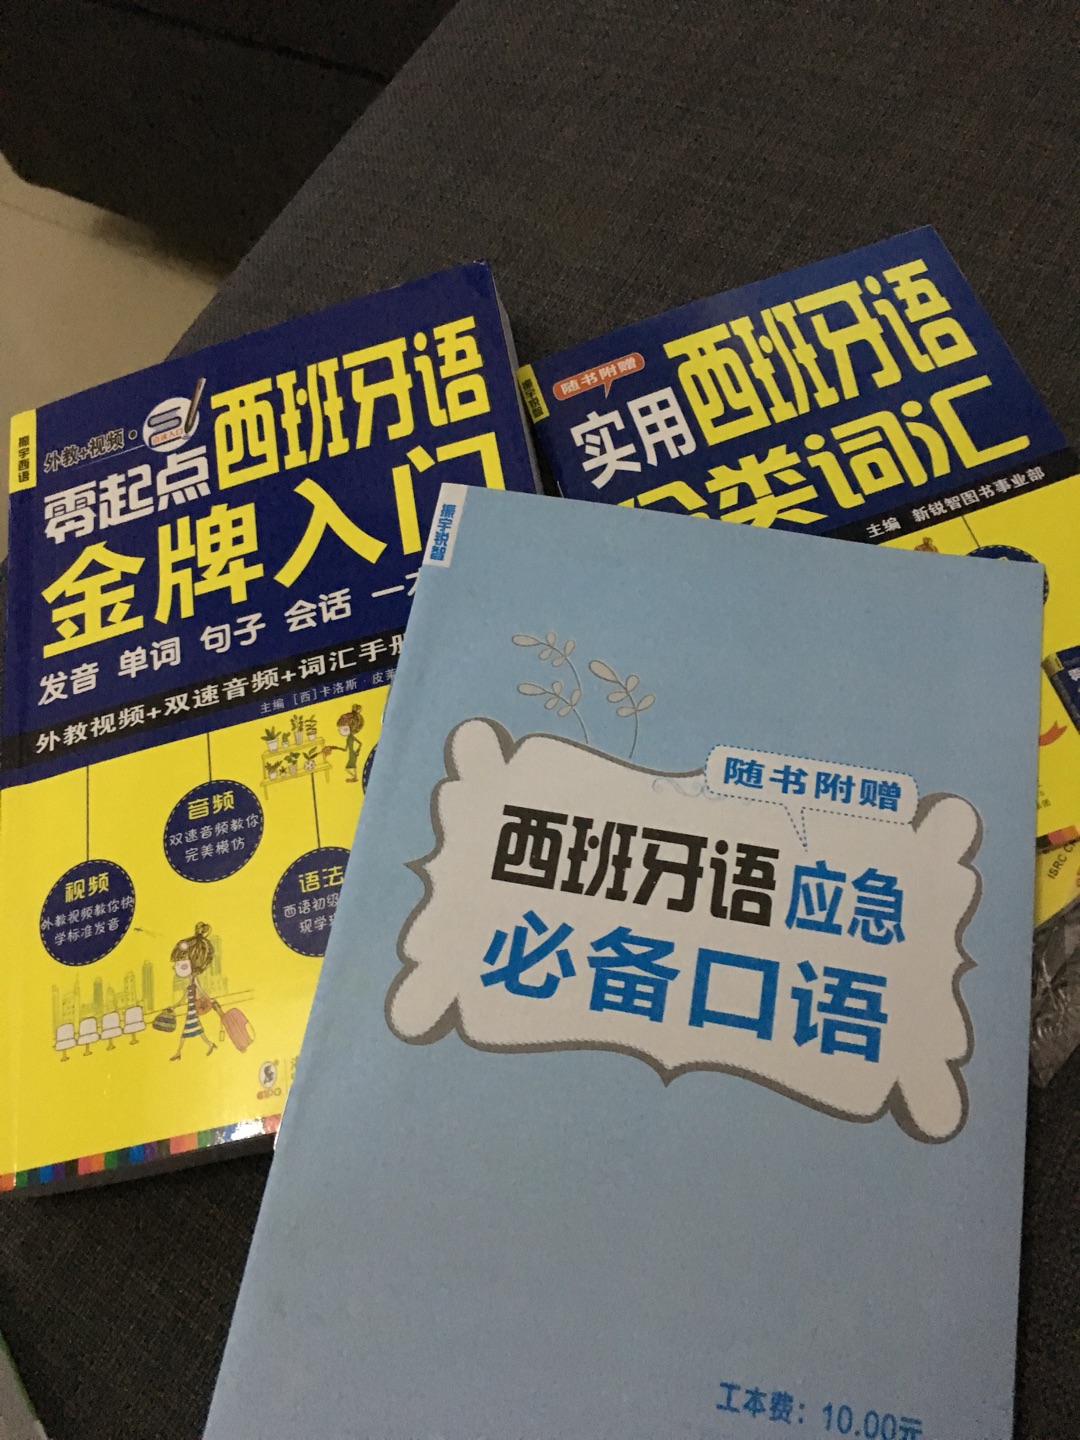 这个书真的适合入门的人看，好简单啊，之前学过一些基础，看这个书比较容易。比较不能接受用中文标注发音的方法